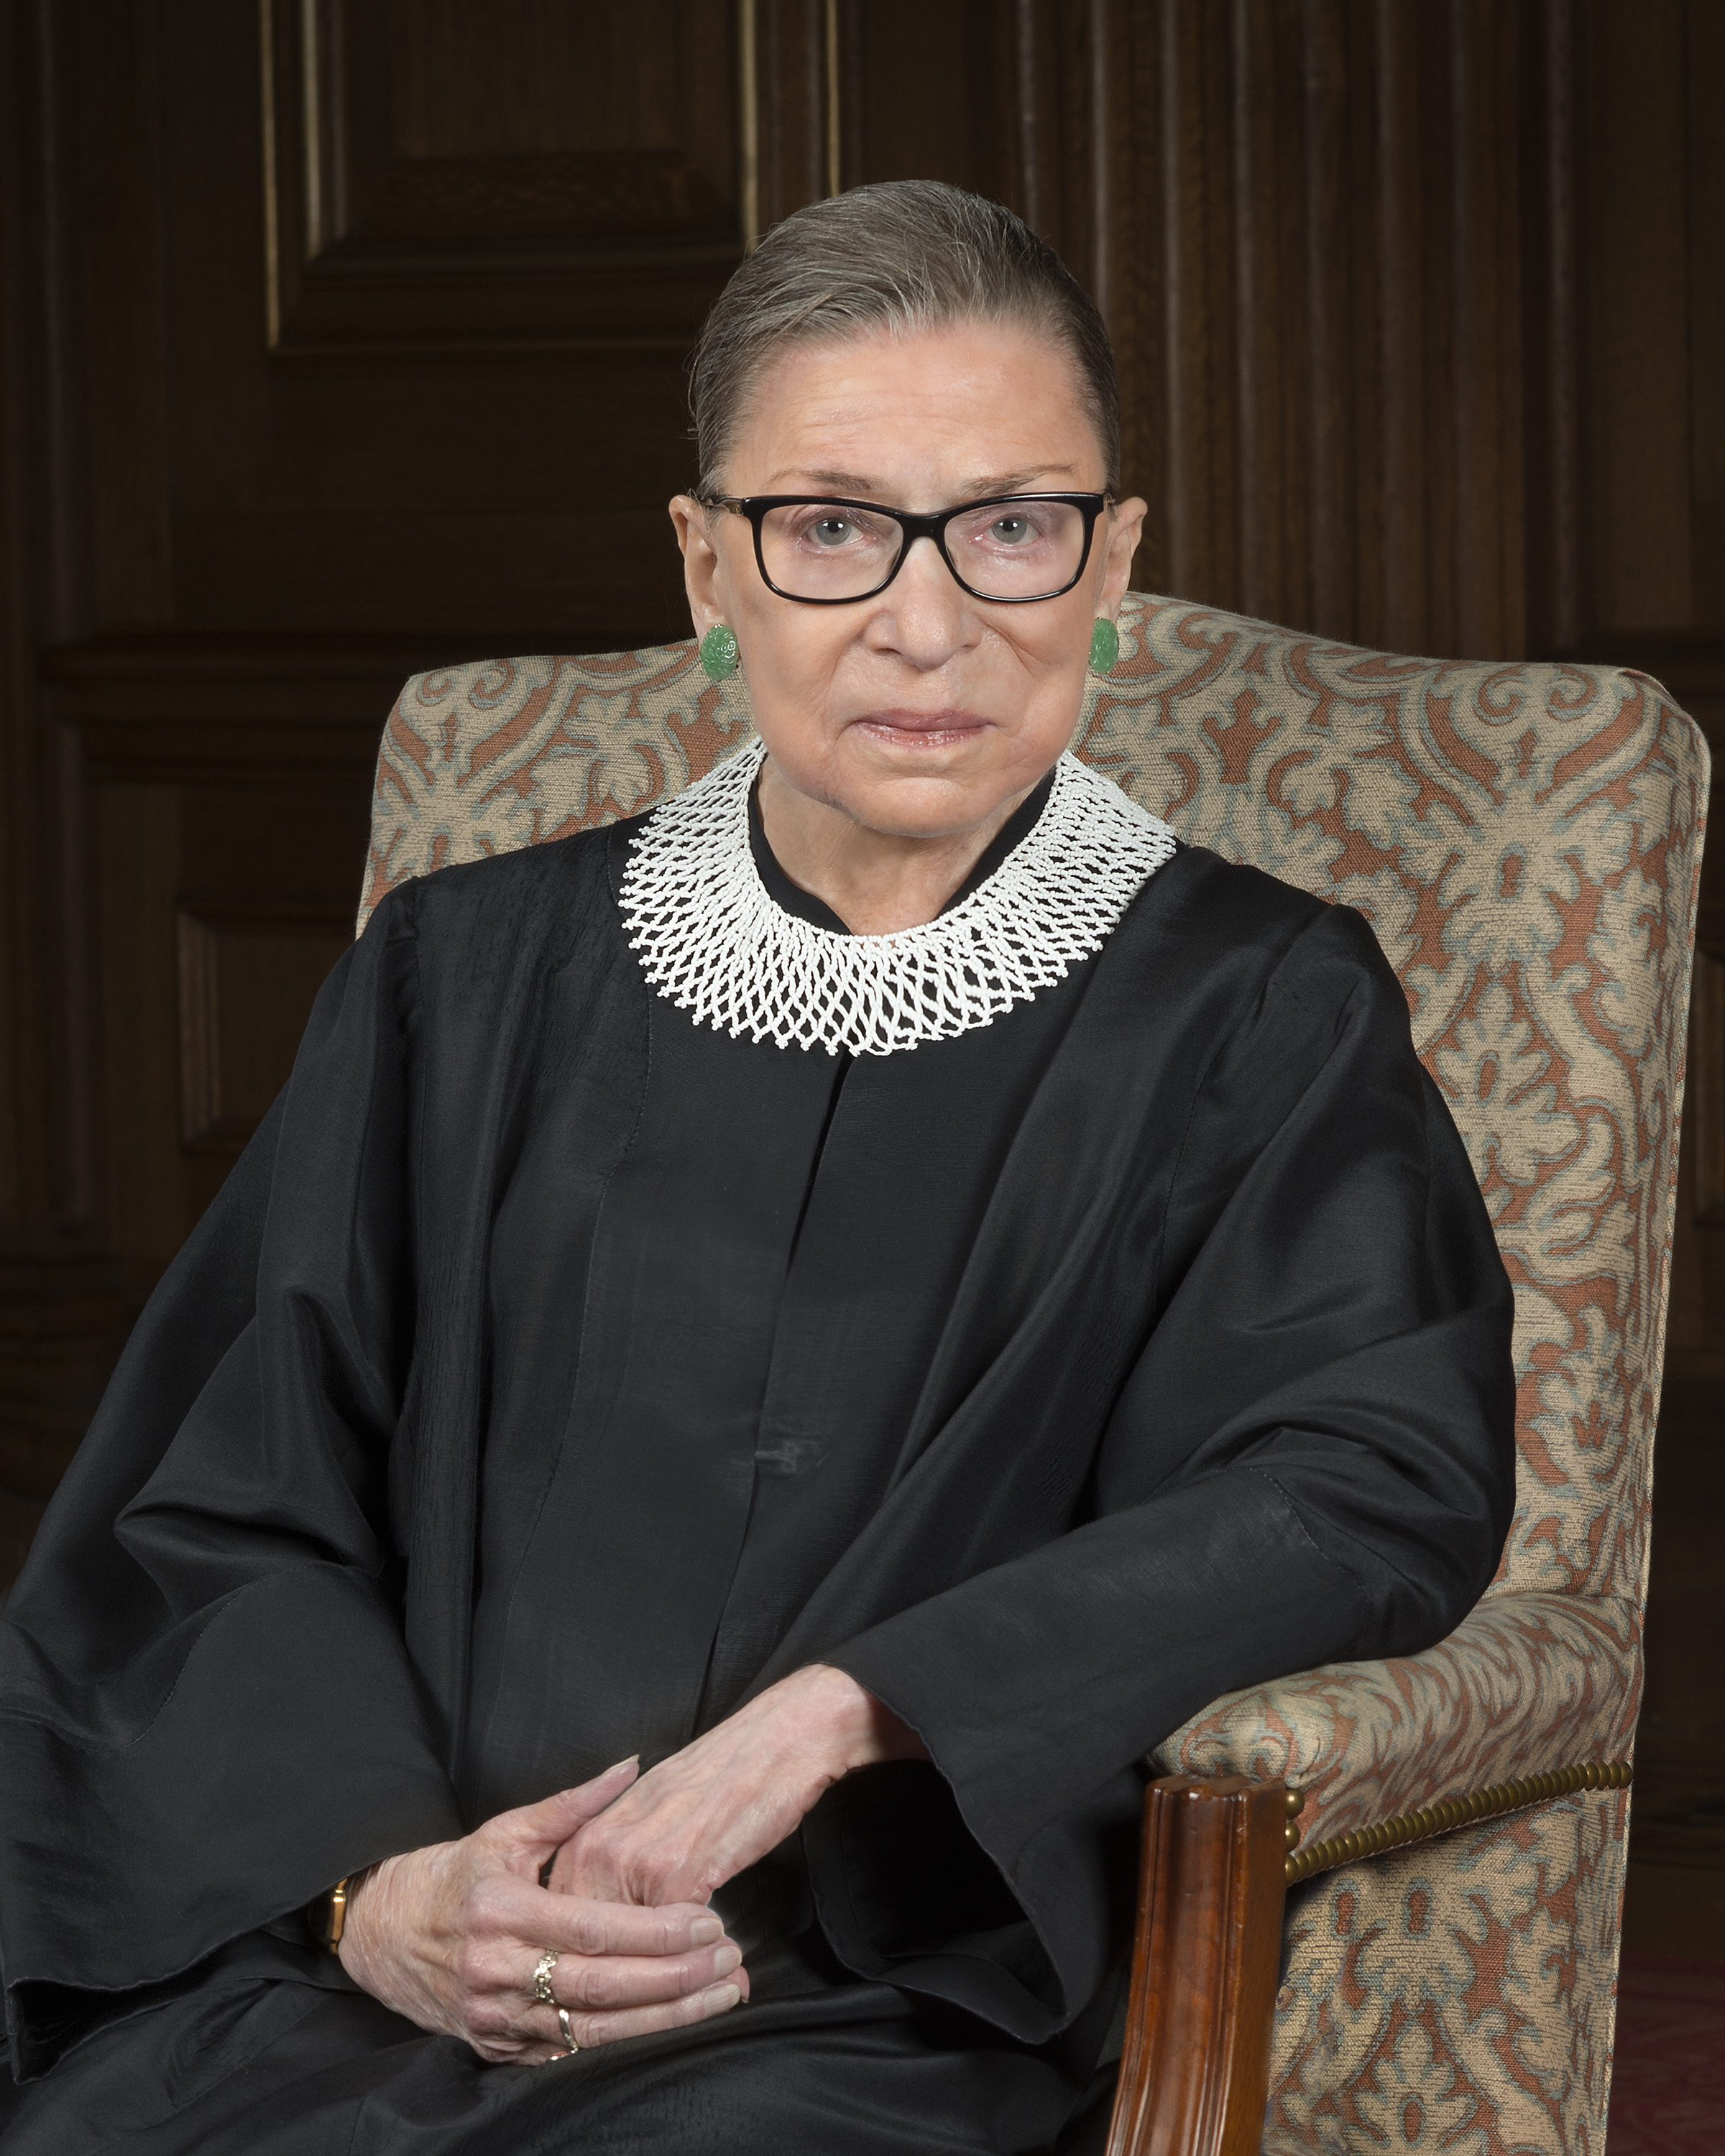 A photo of Justice Ruth Bader Ginsberg looking seriously at the camera